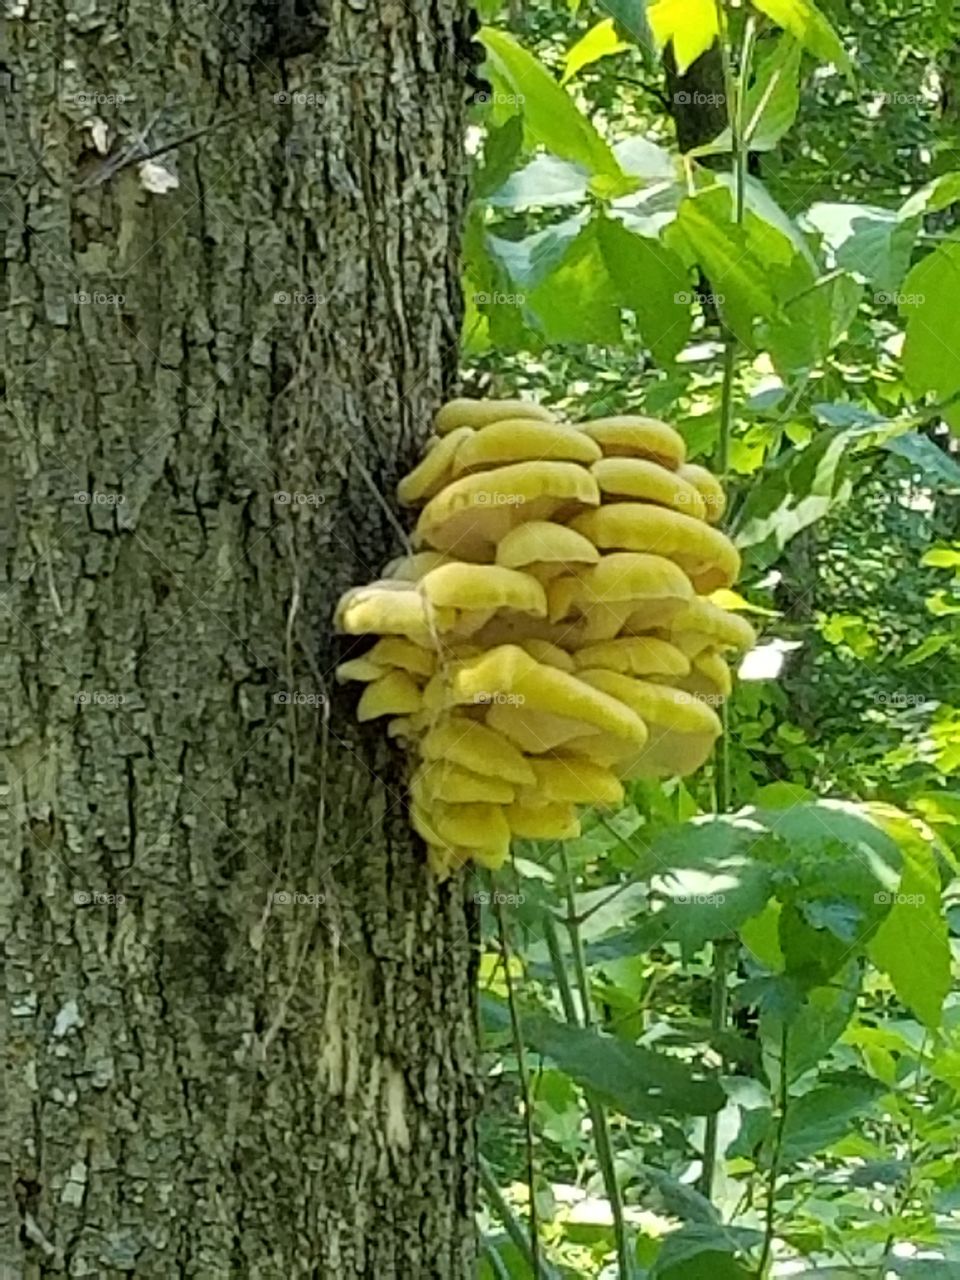 mushrooms on dead tree